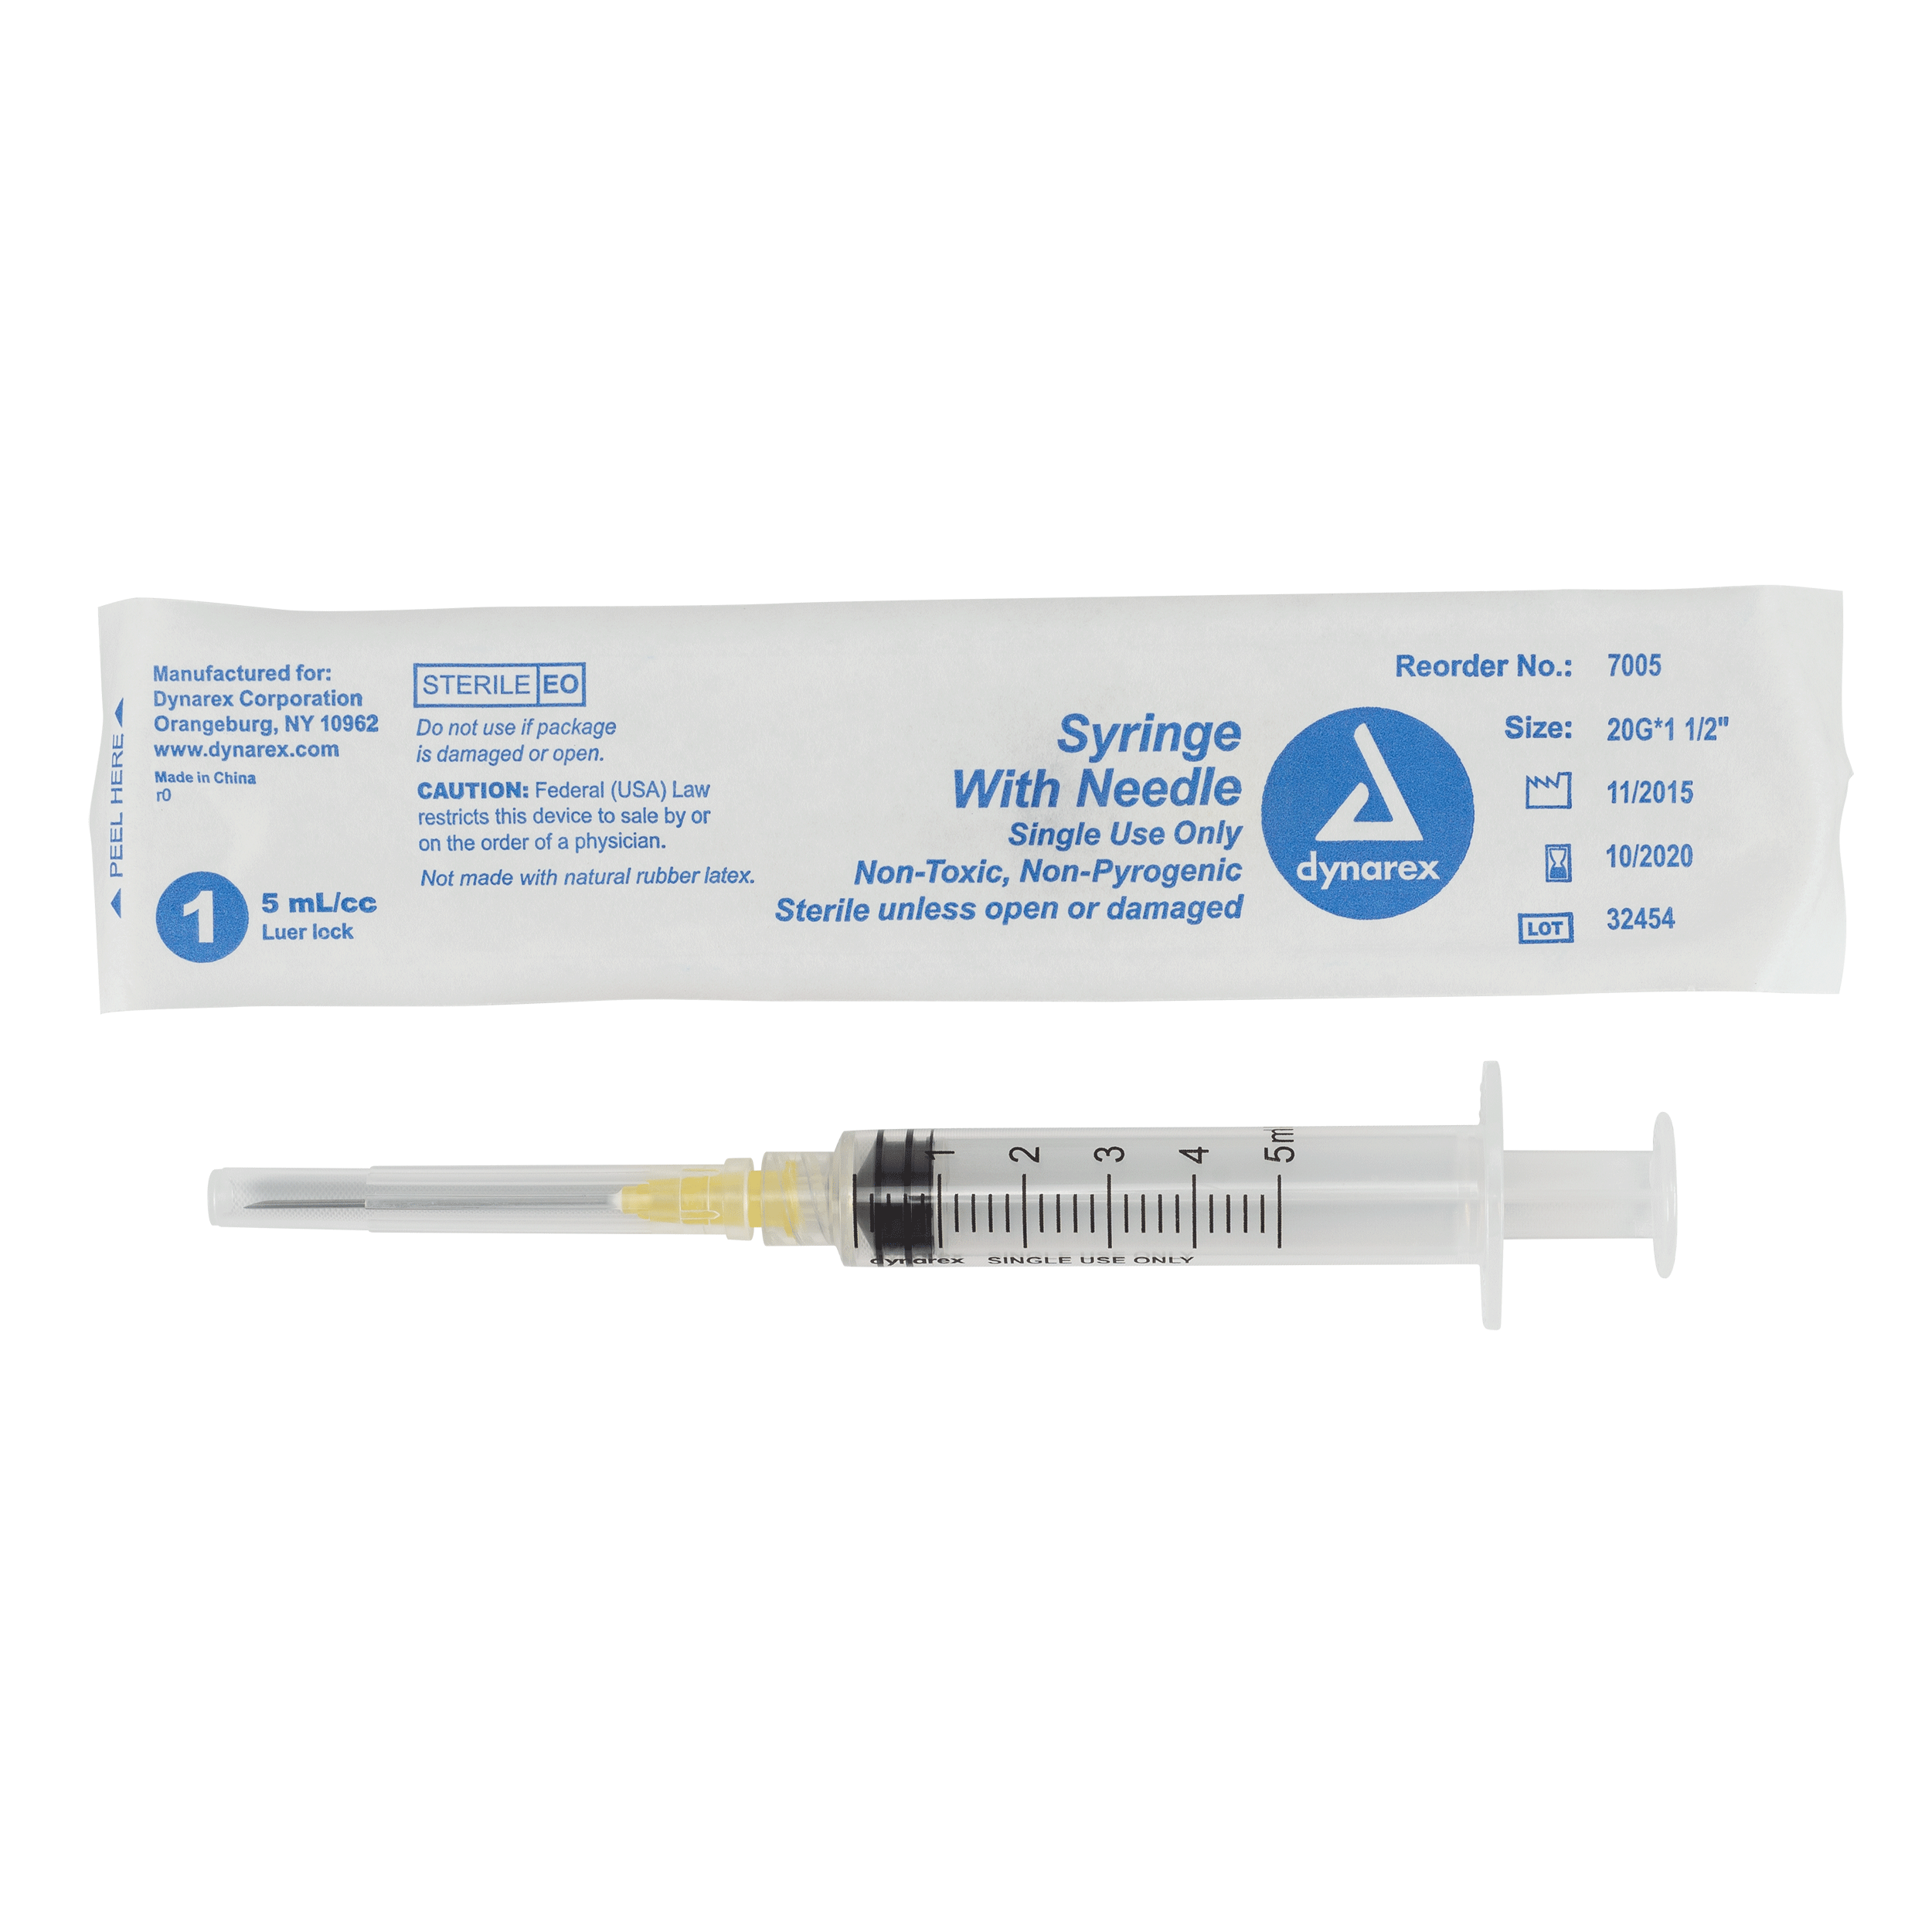 Syringes With Needle - 5cc - 20G, 1.5